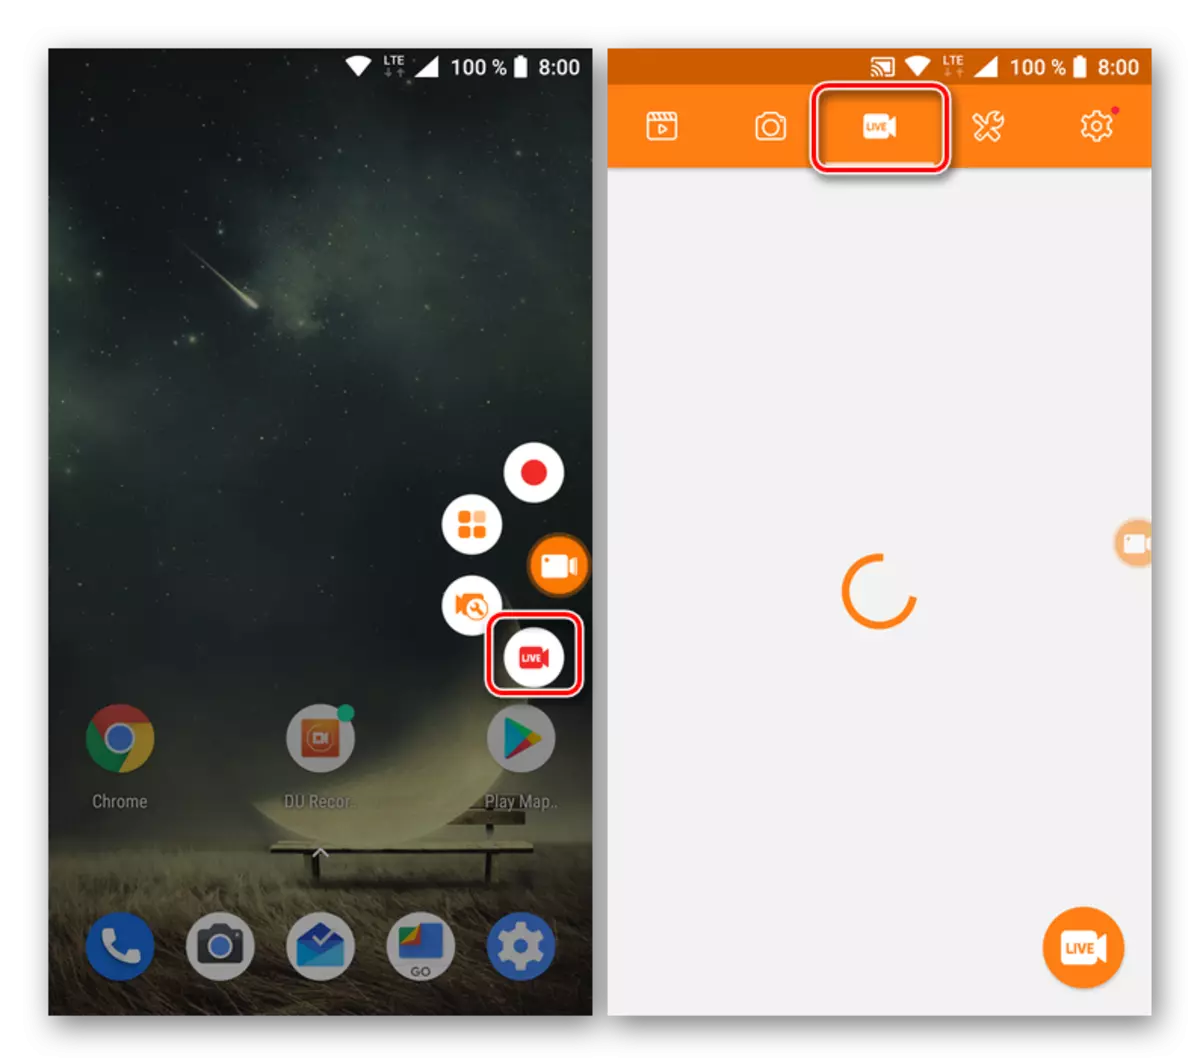 Döretmek we Android üçin du Recorder goýma oýun gepleşikleri görmek